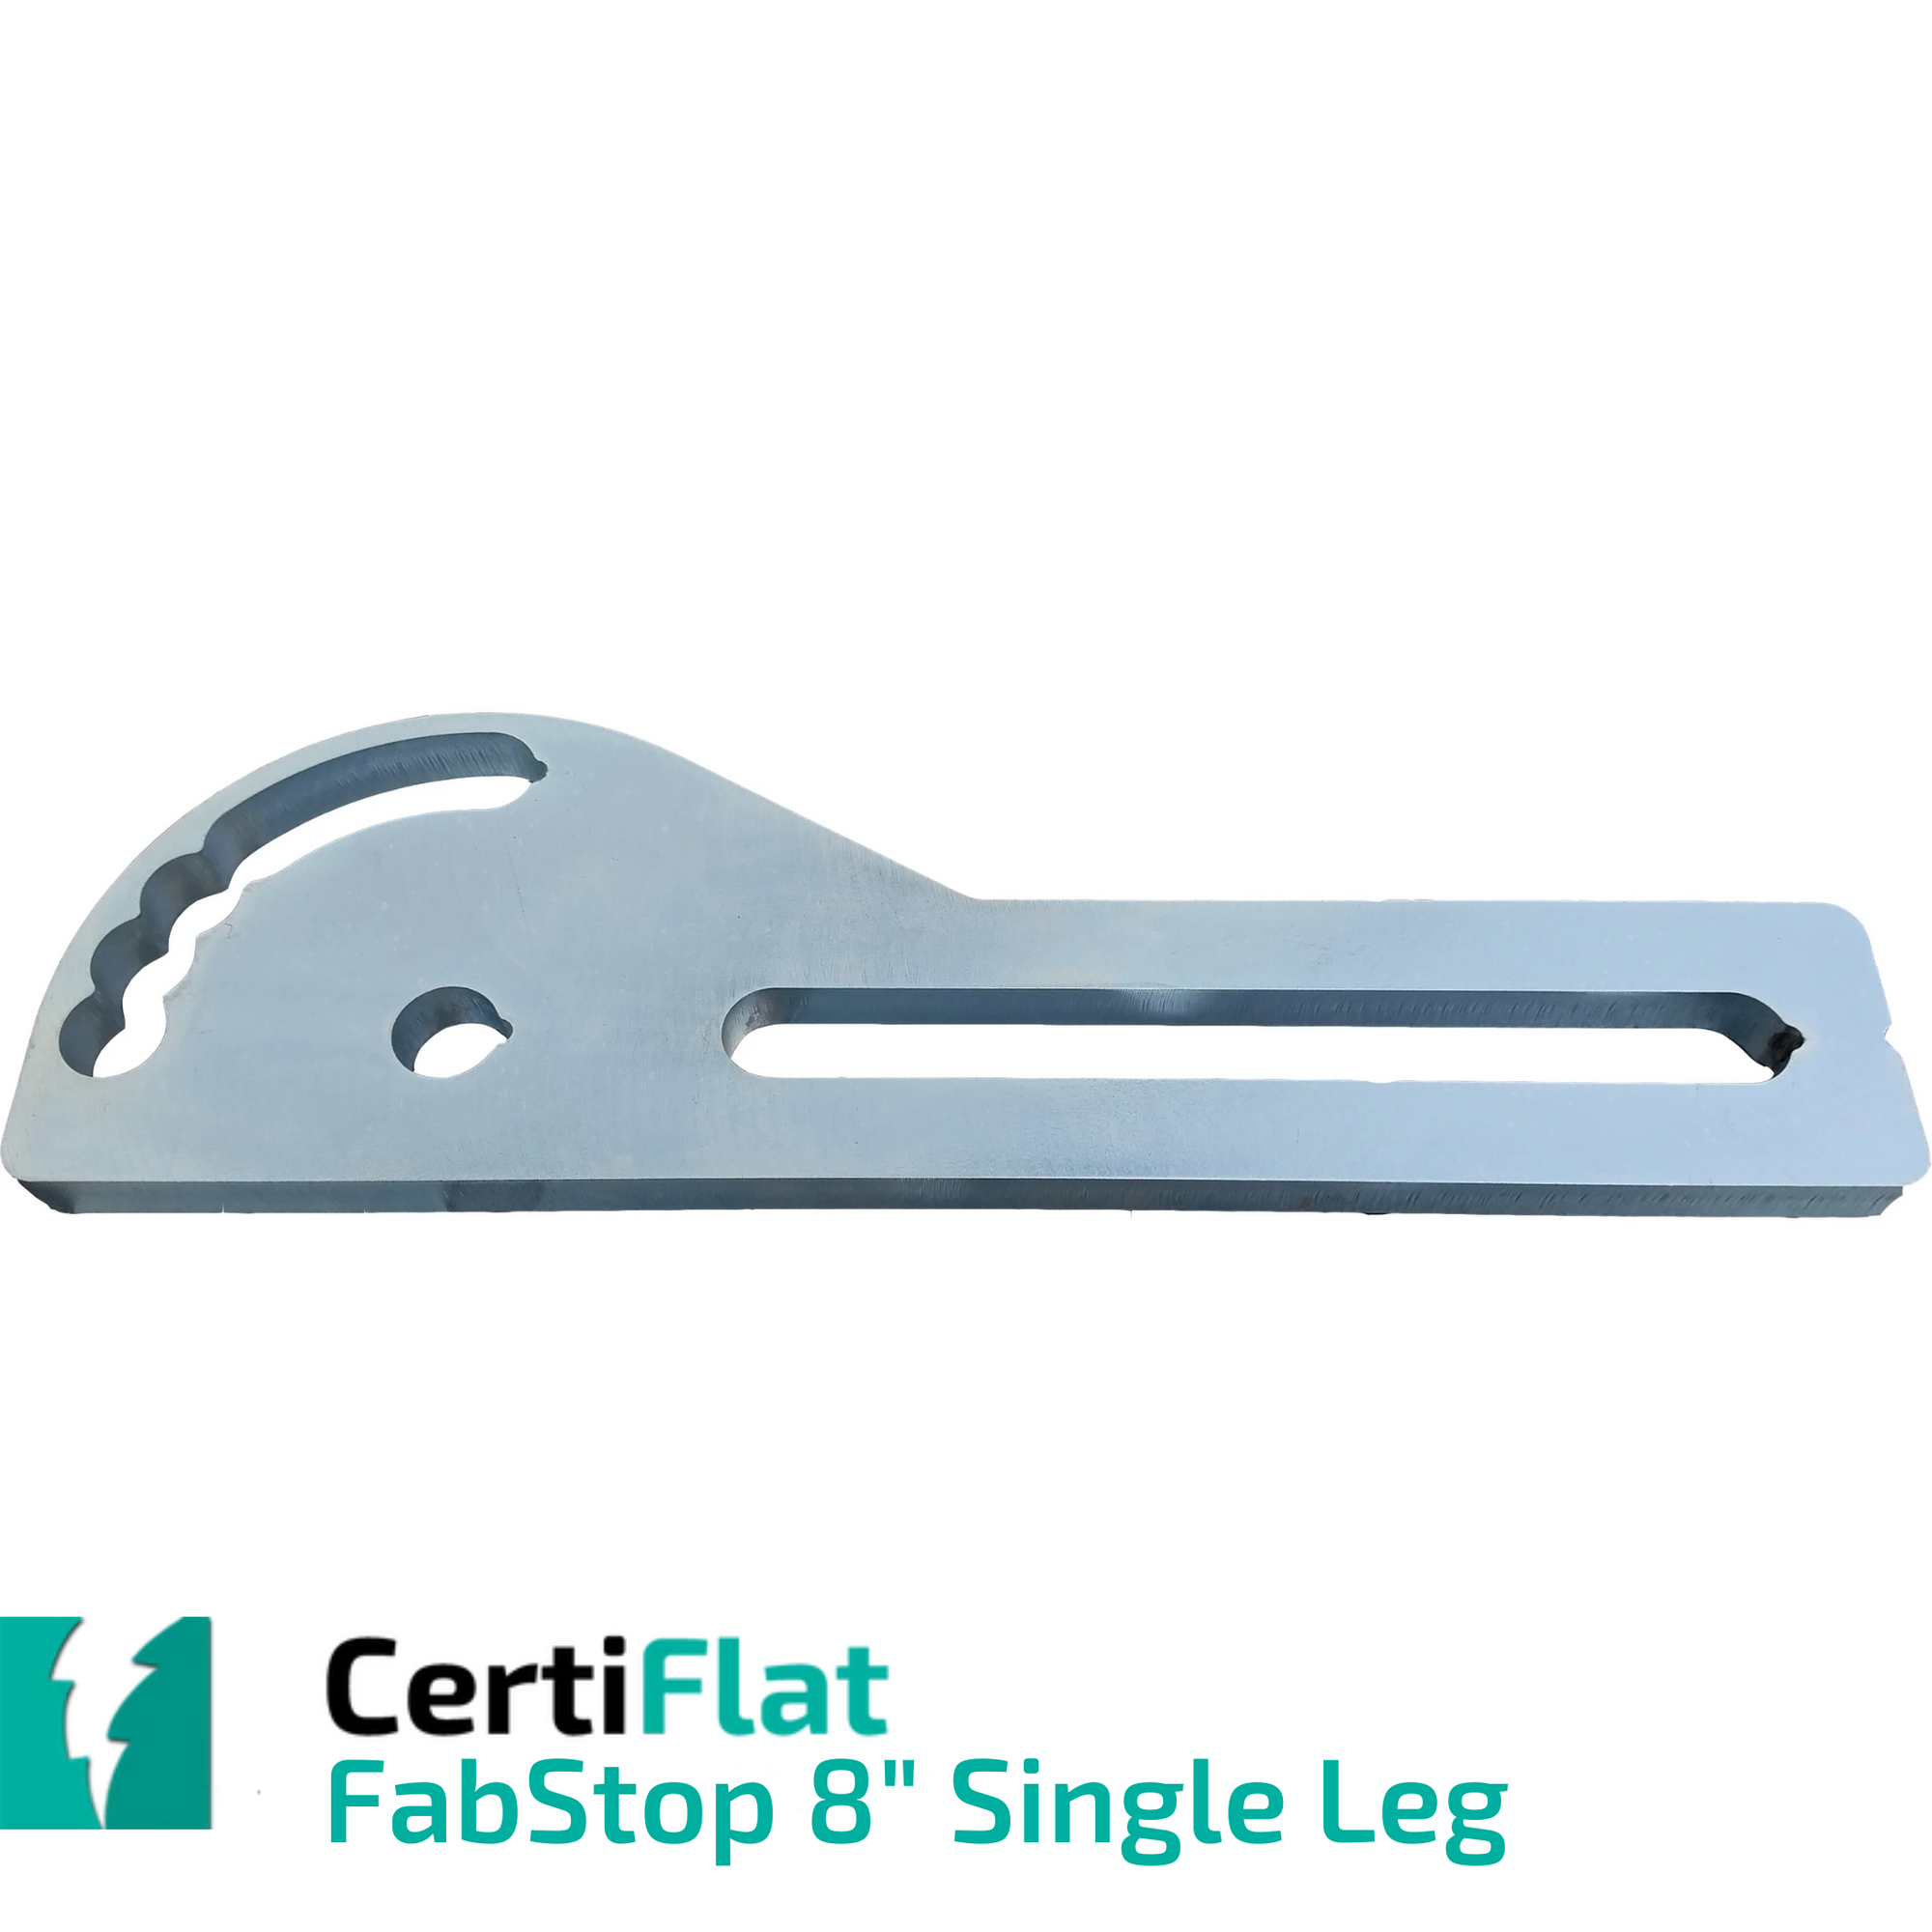 CertiFlat 8" Single Leg FabStop